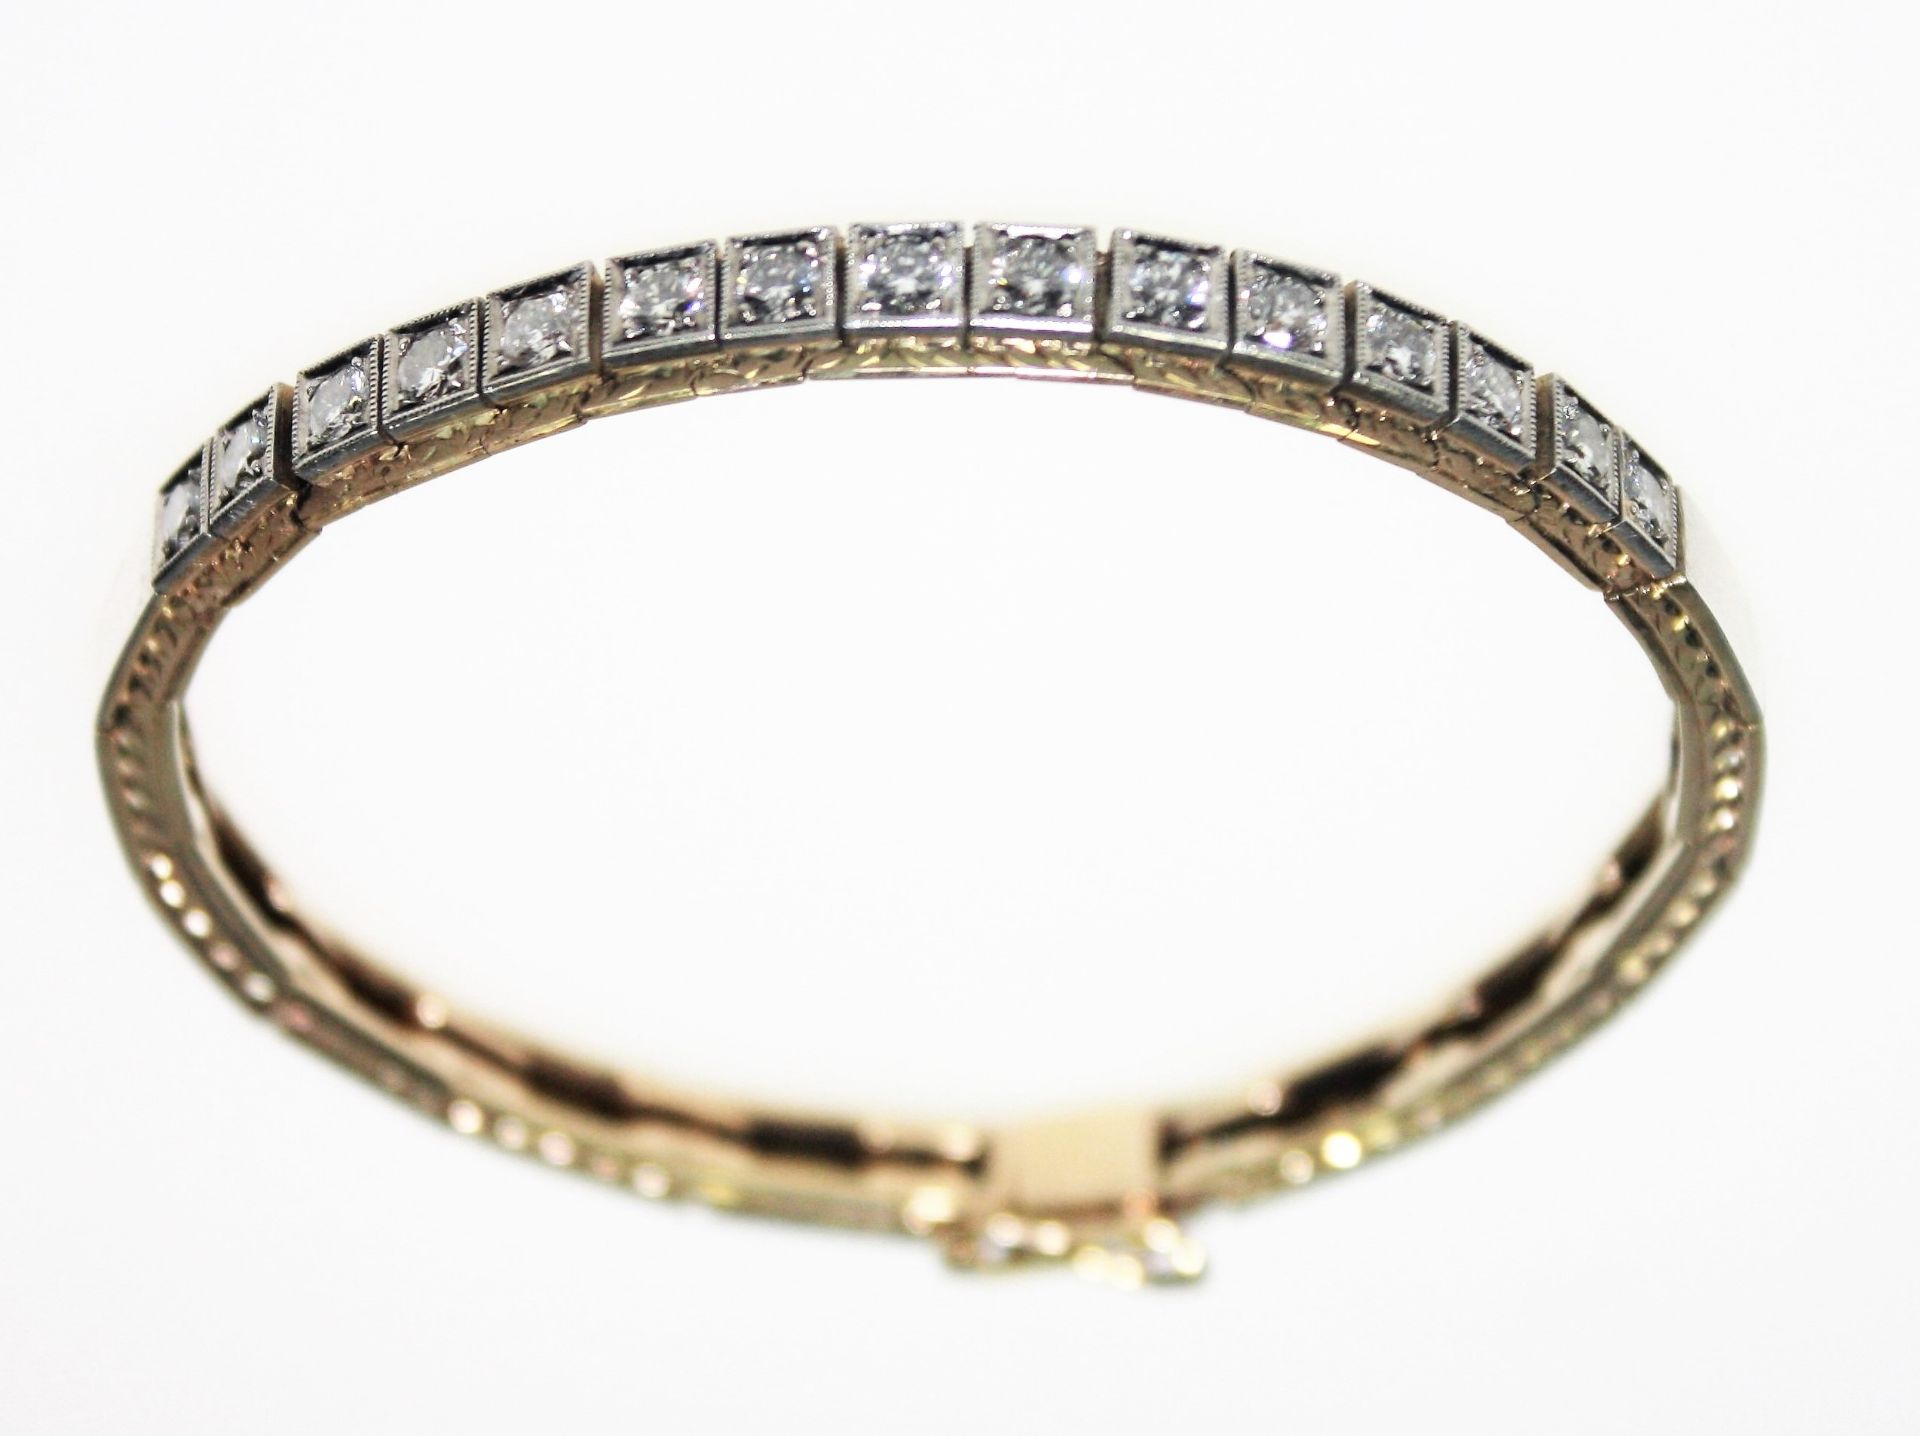 Schmales, goldenes Armband mit weißer Aufsicht 585/f gest., zur Mitte in quadratischen